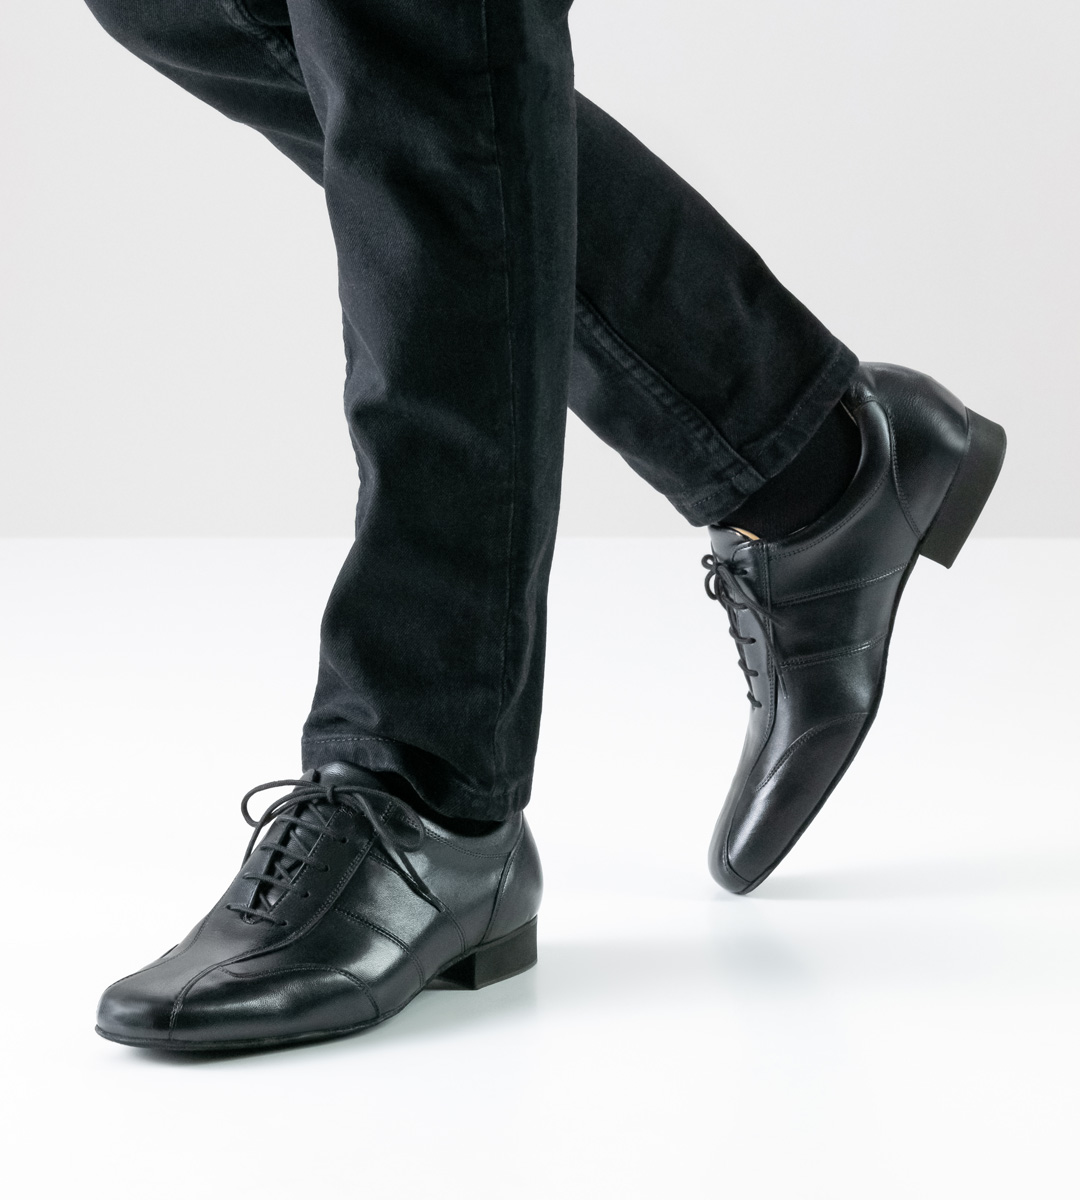 black men's dance shoe by Werner Kern for loose insoles